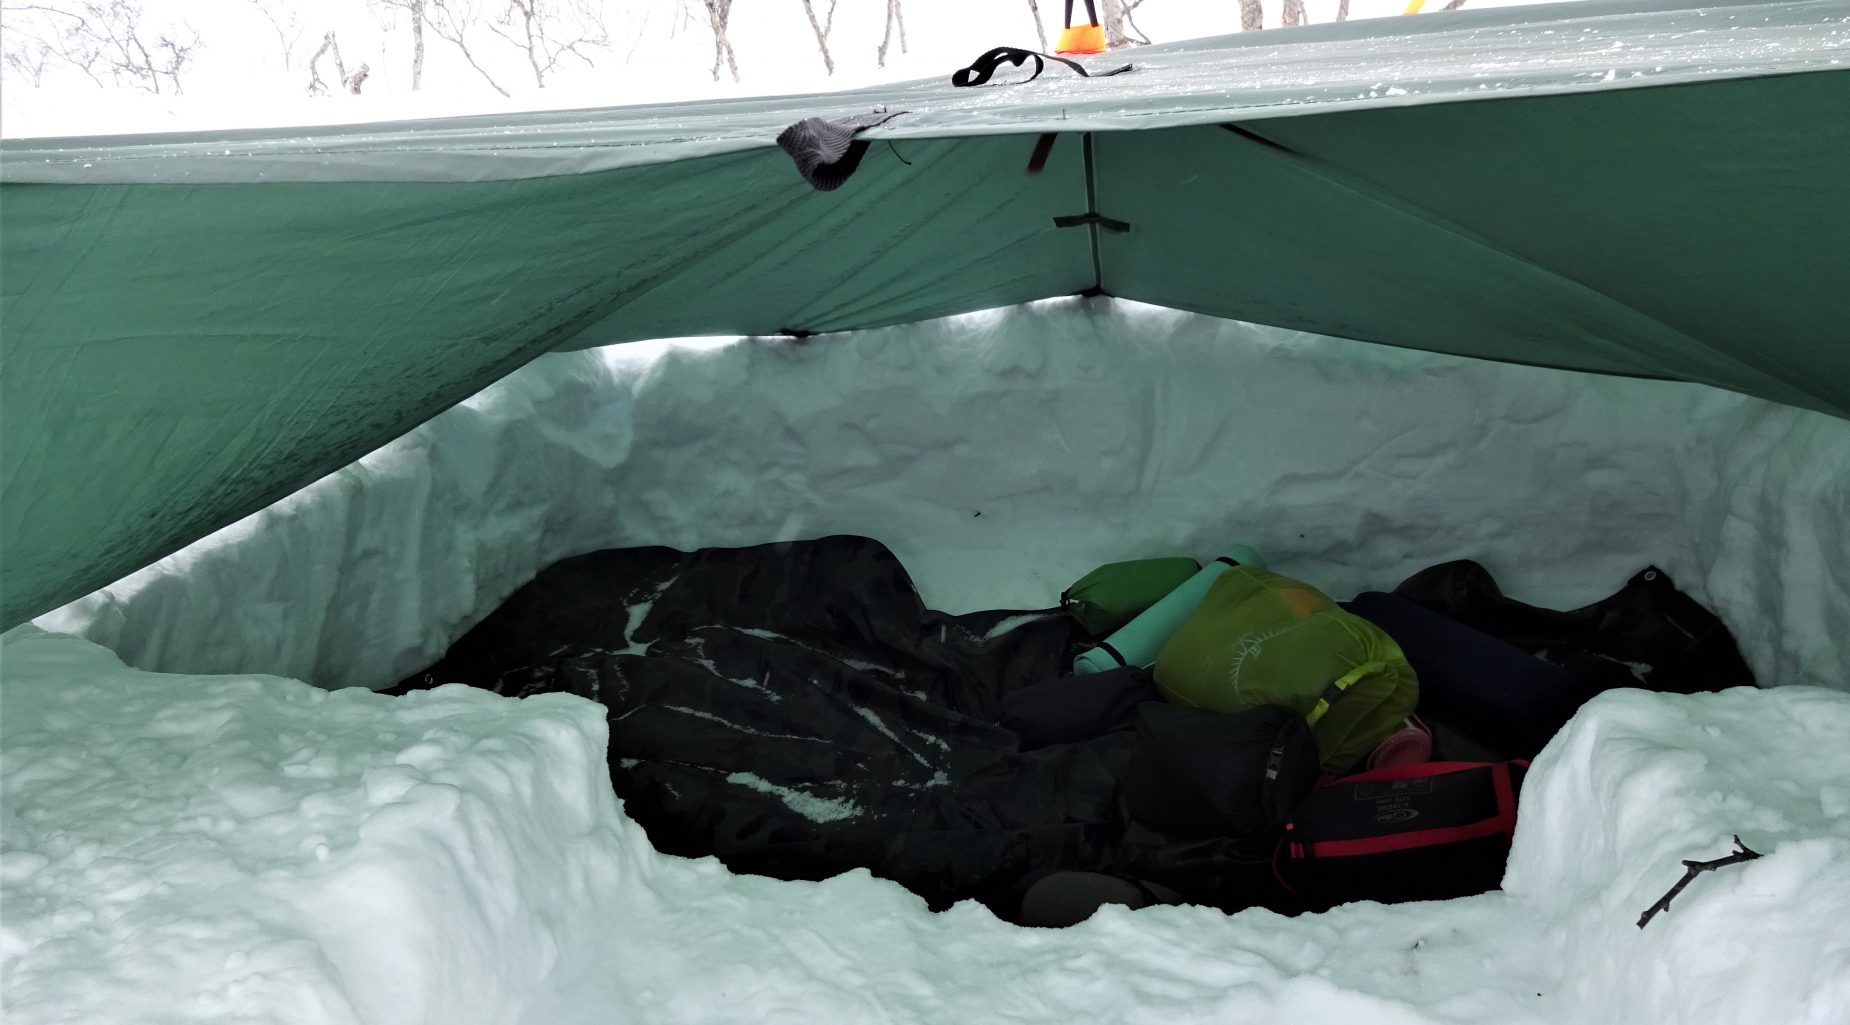 Slaapplek gegraven in de sneeuw afgedekt met een groene tarp tijdens trekking Noorwegen.